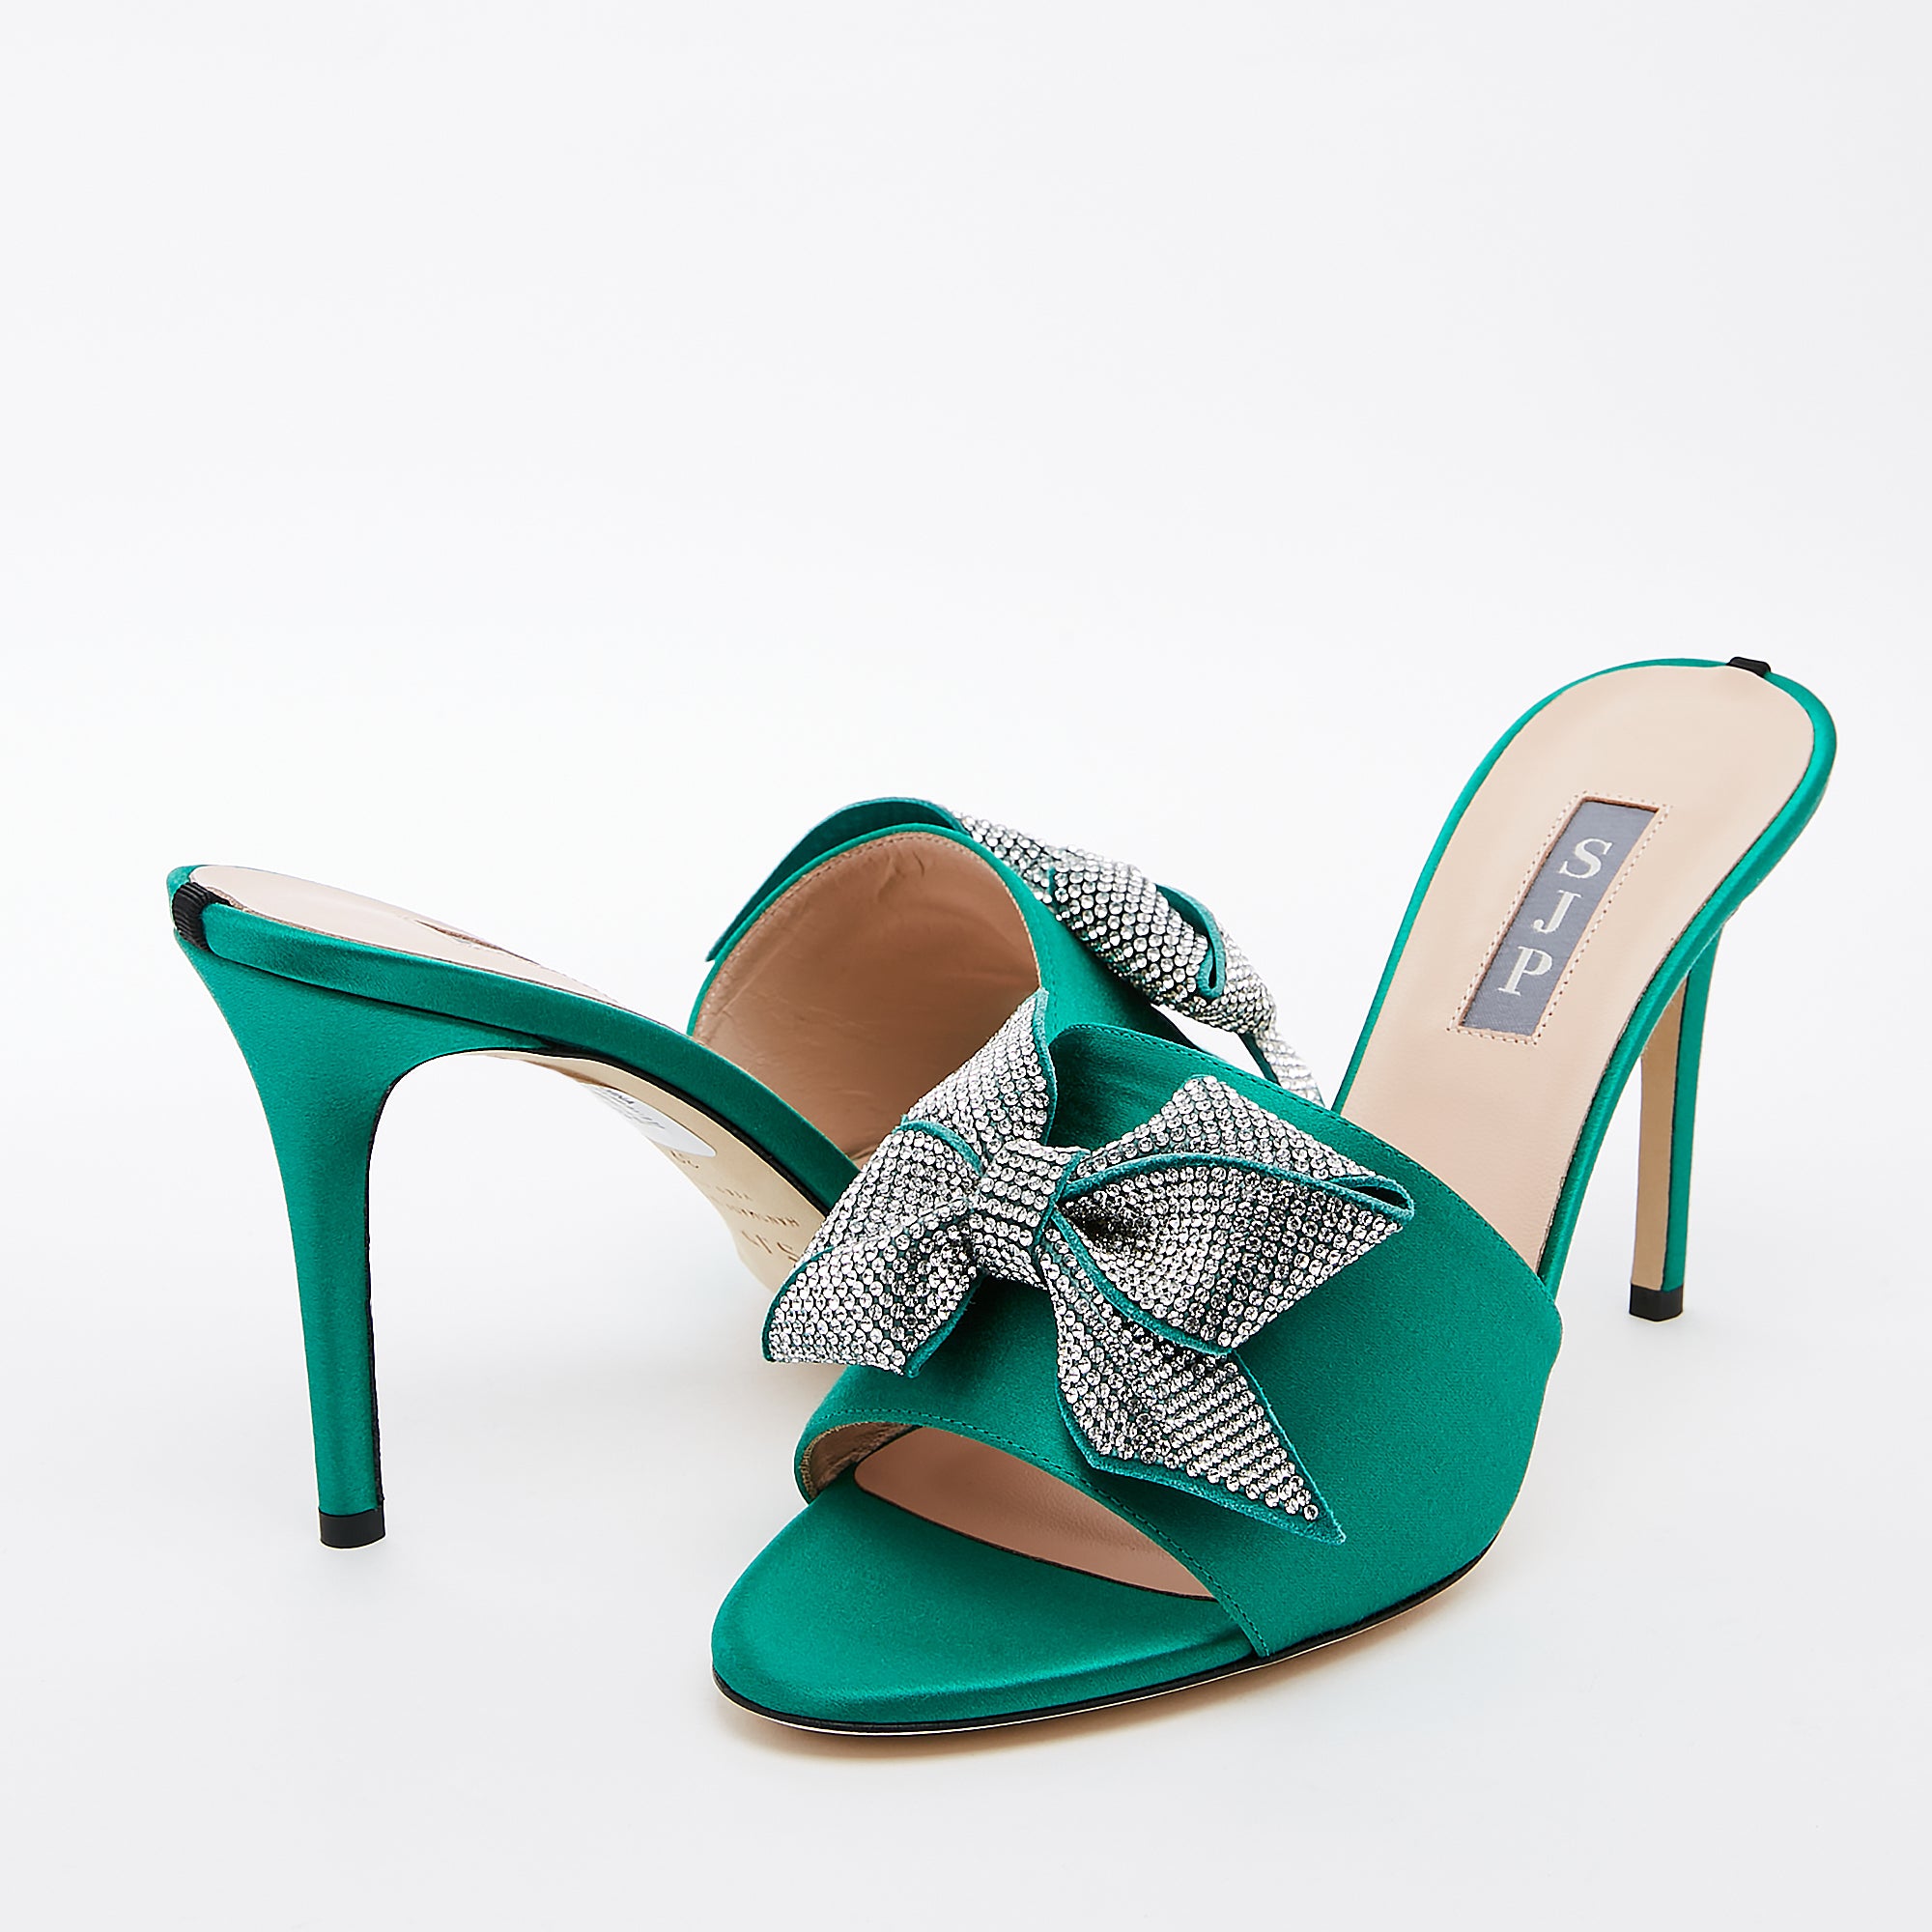 SJP by Sarah Jessica Parker Amna 90mm Emerald Green Satin Sandals